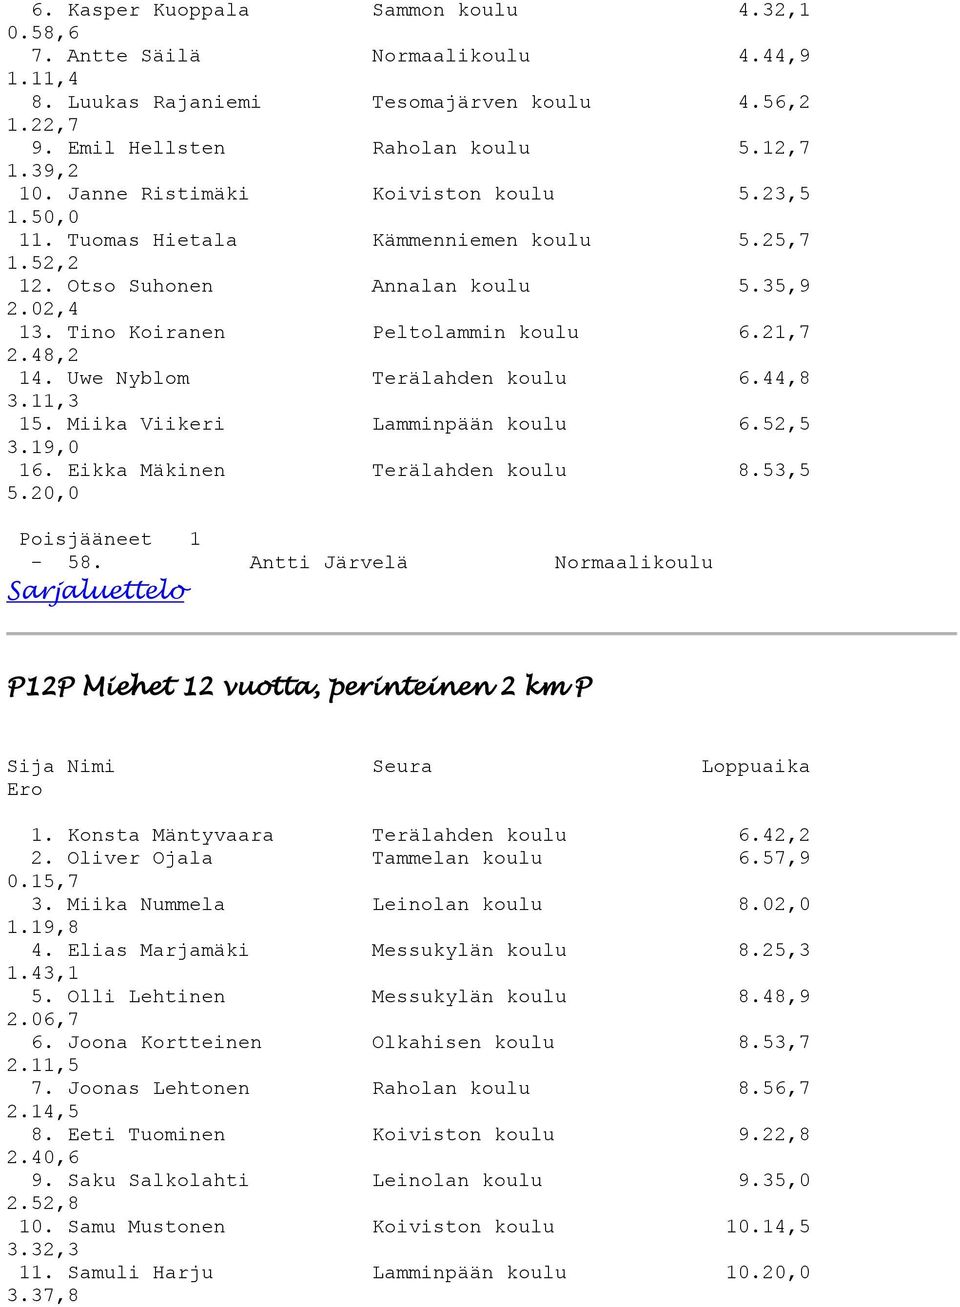 Uwe Nyblom Terälahden koulu 6.44,8 3.11,3 15. Miika Viikeri Lamminpään koulu 6.52,5 3.19,0 16. Eikka Mäkinen Terälahden koulu 8.53,5 5.20,0 Poisjääneet 1-58.